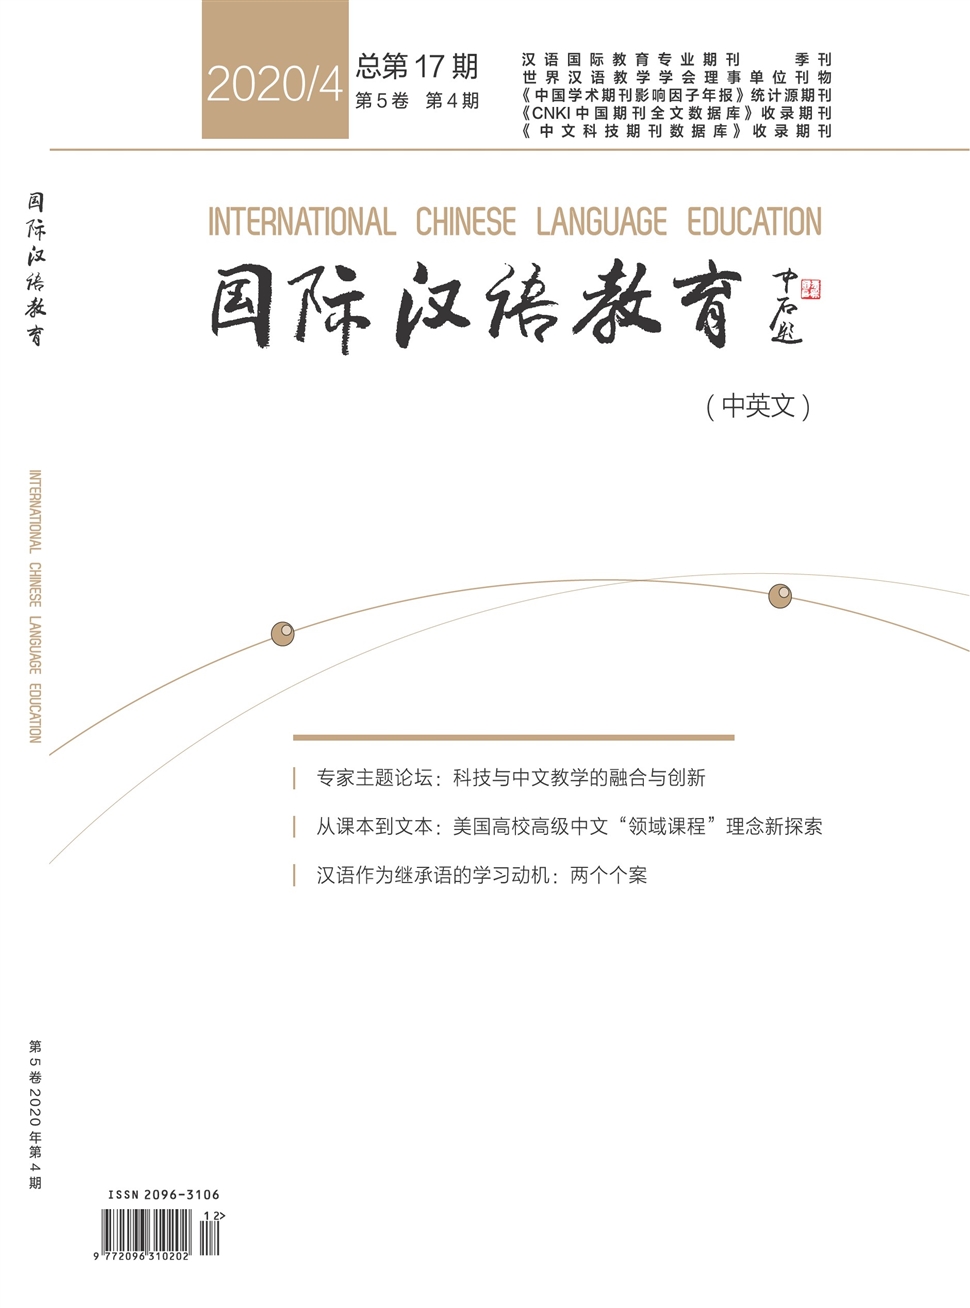 国际汉语教育期刊